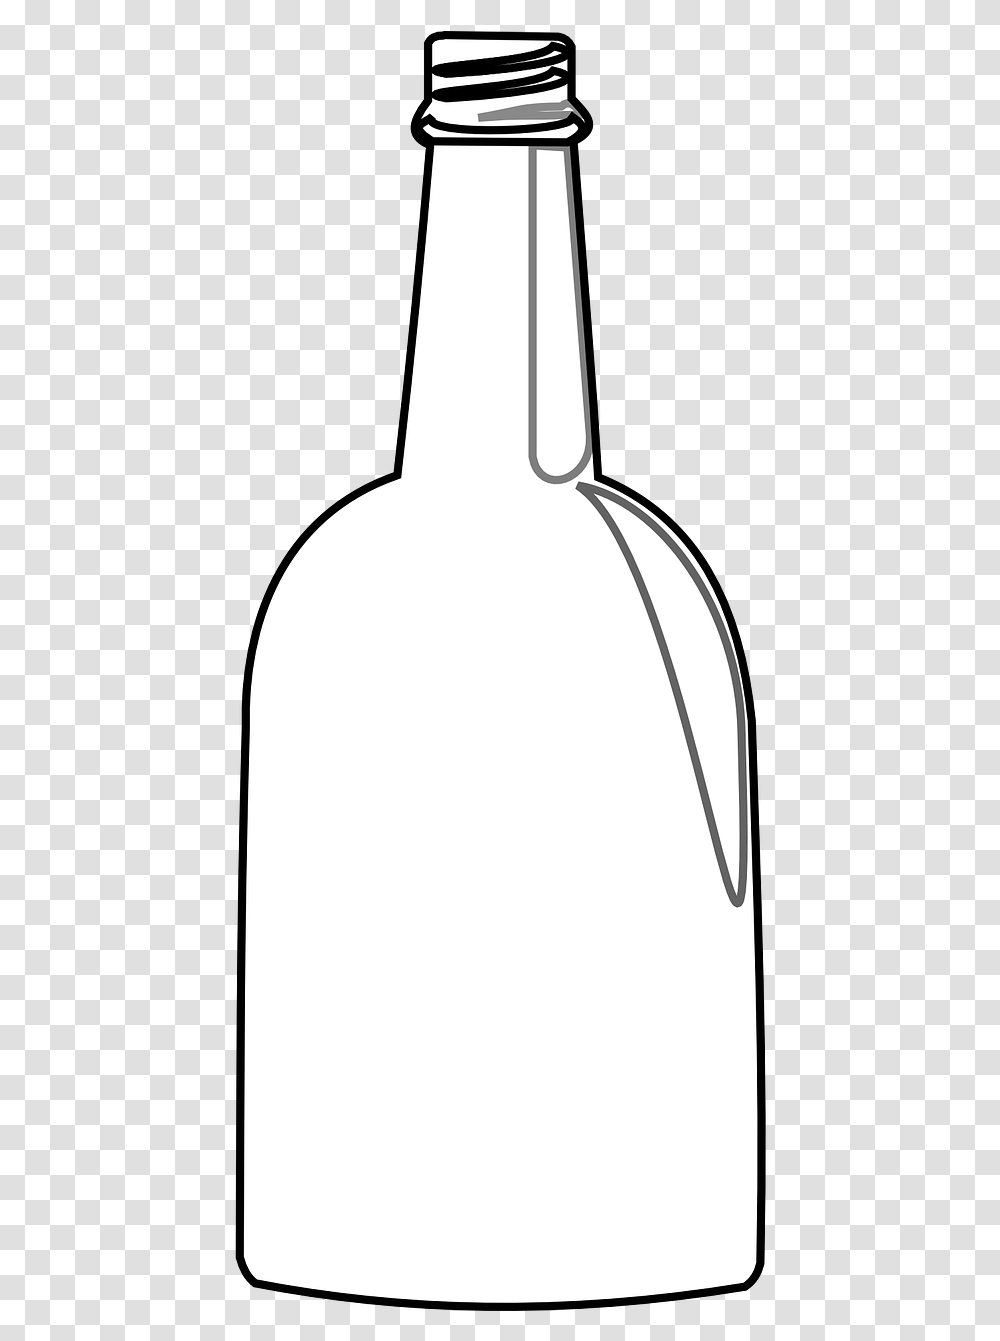 Bottle Water Glass Free Photo Champagne Bottle Outline, Lamp, Jug, Jar, Beverage Transparent Png